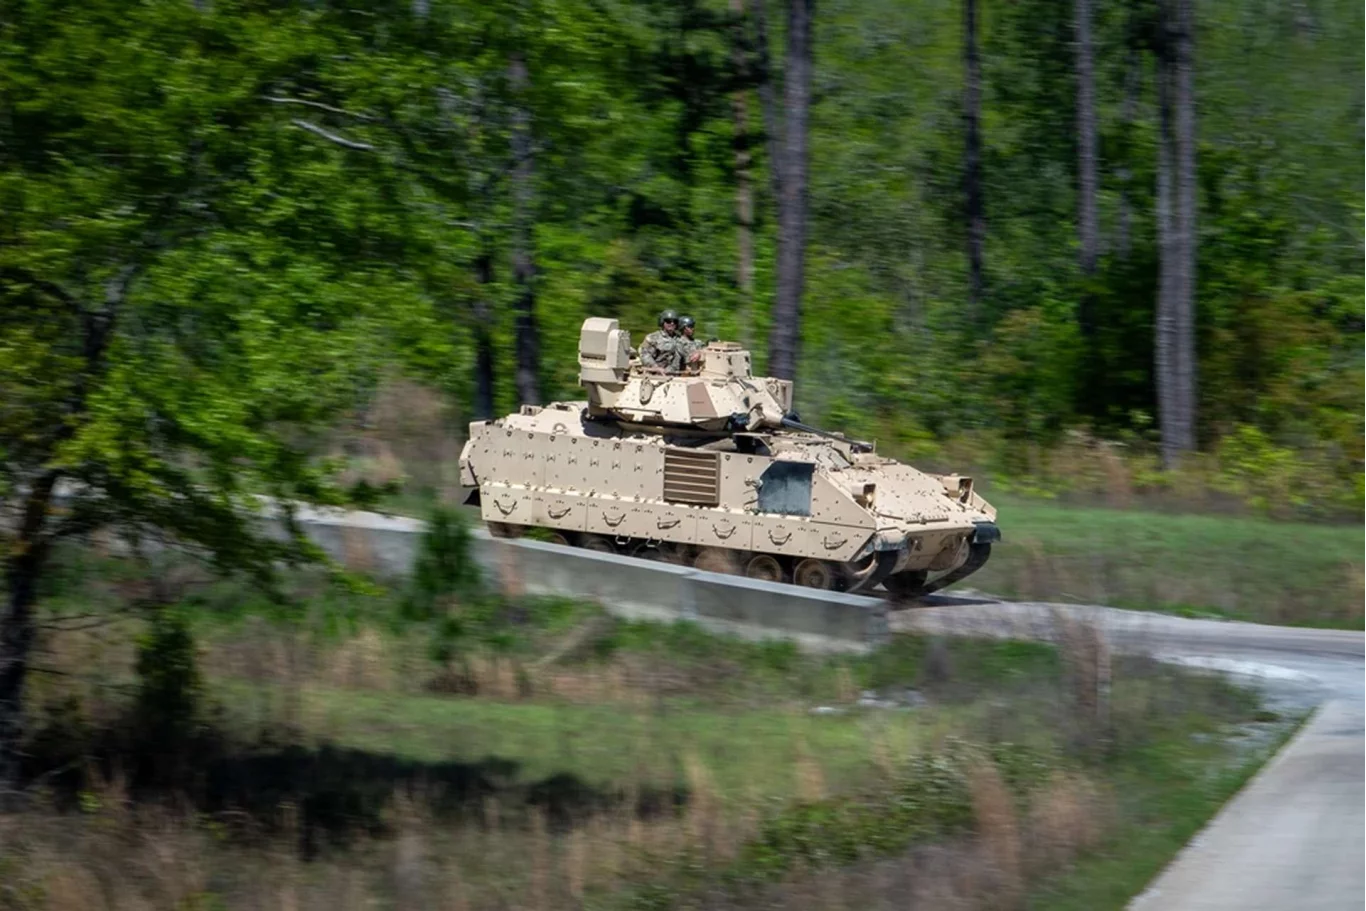 الجيش الأمريكي ينشر 100 مركبة جديدة من طراز M2A3 و Bradley بالقرب من روسيا